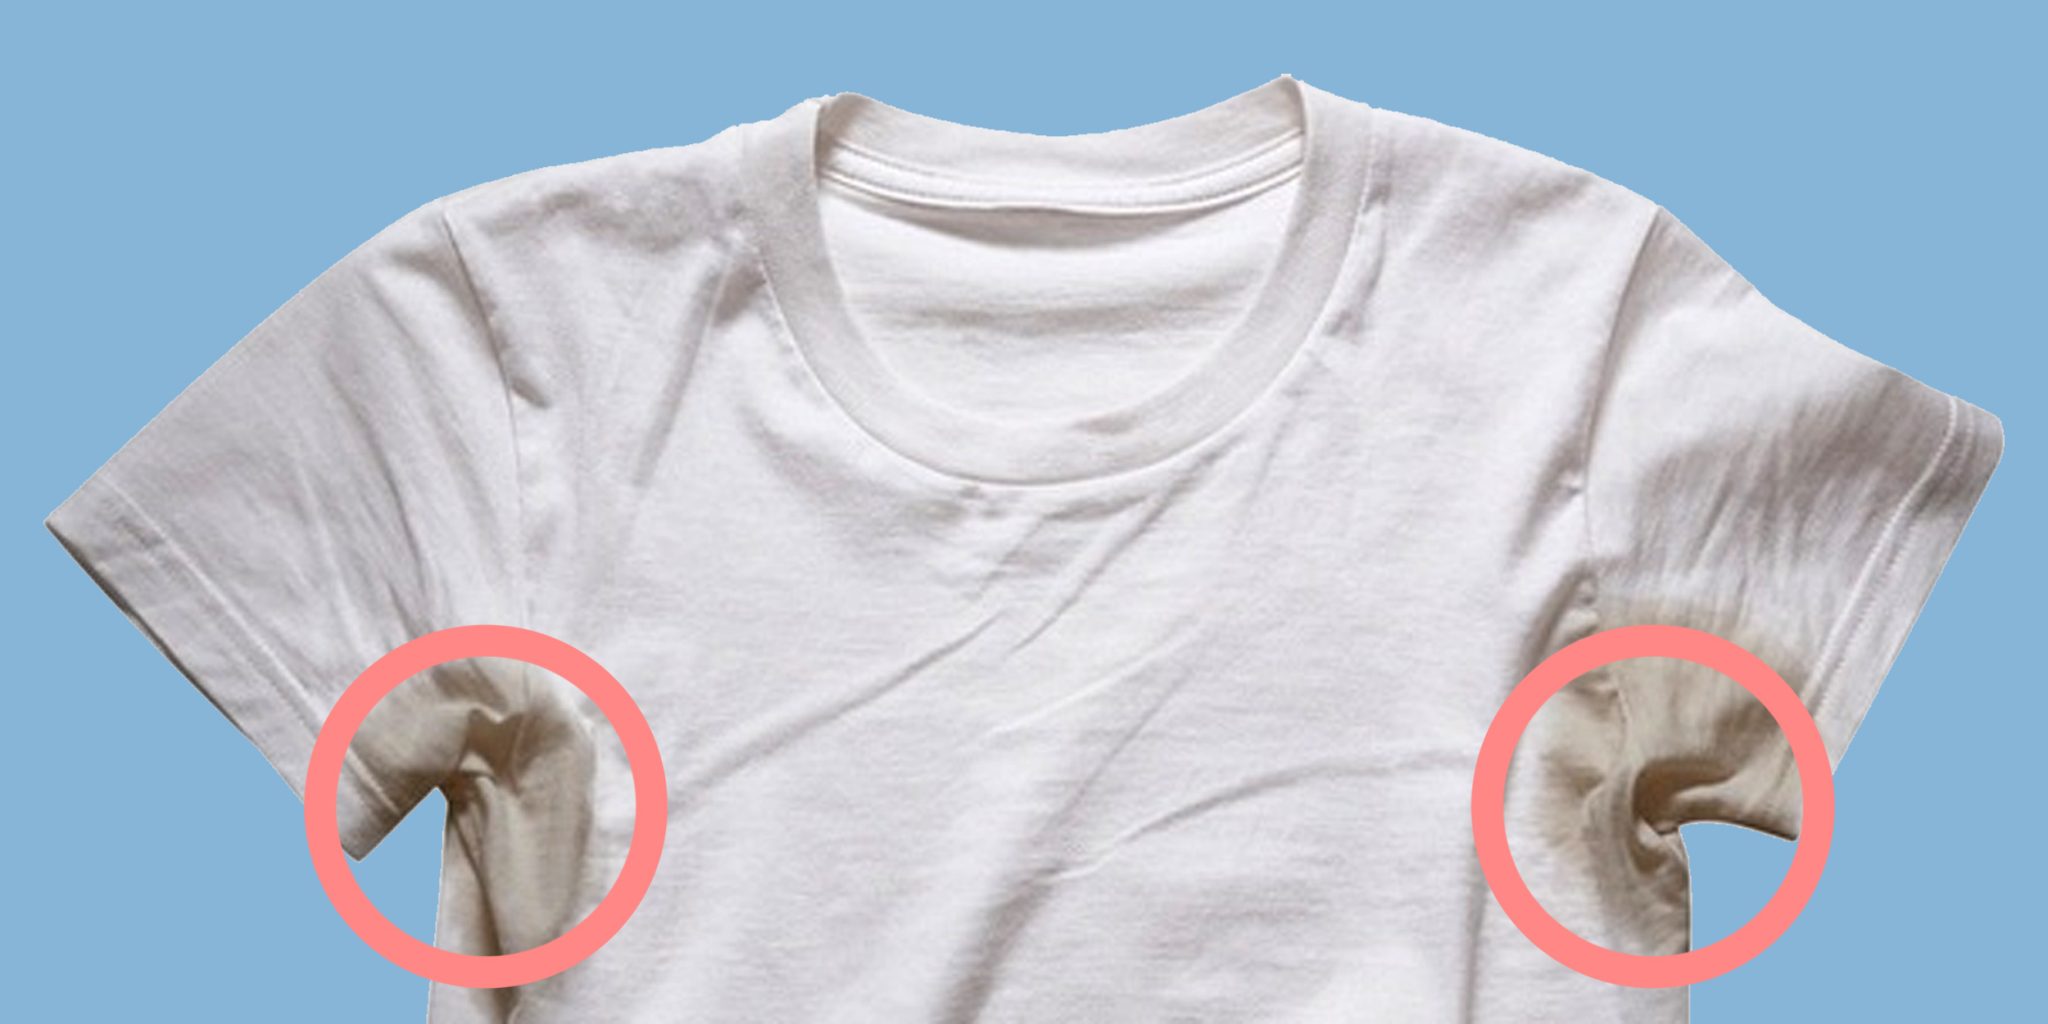 Используйте отбеливатель для удаления пятен на футболке